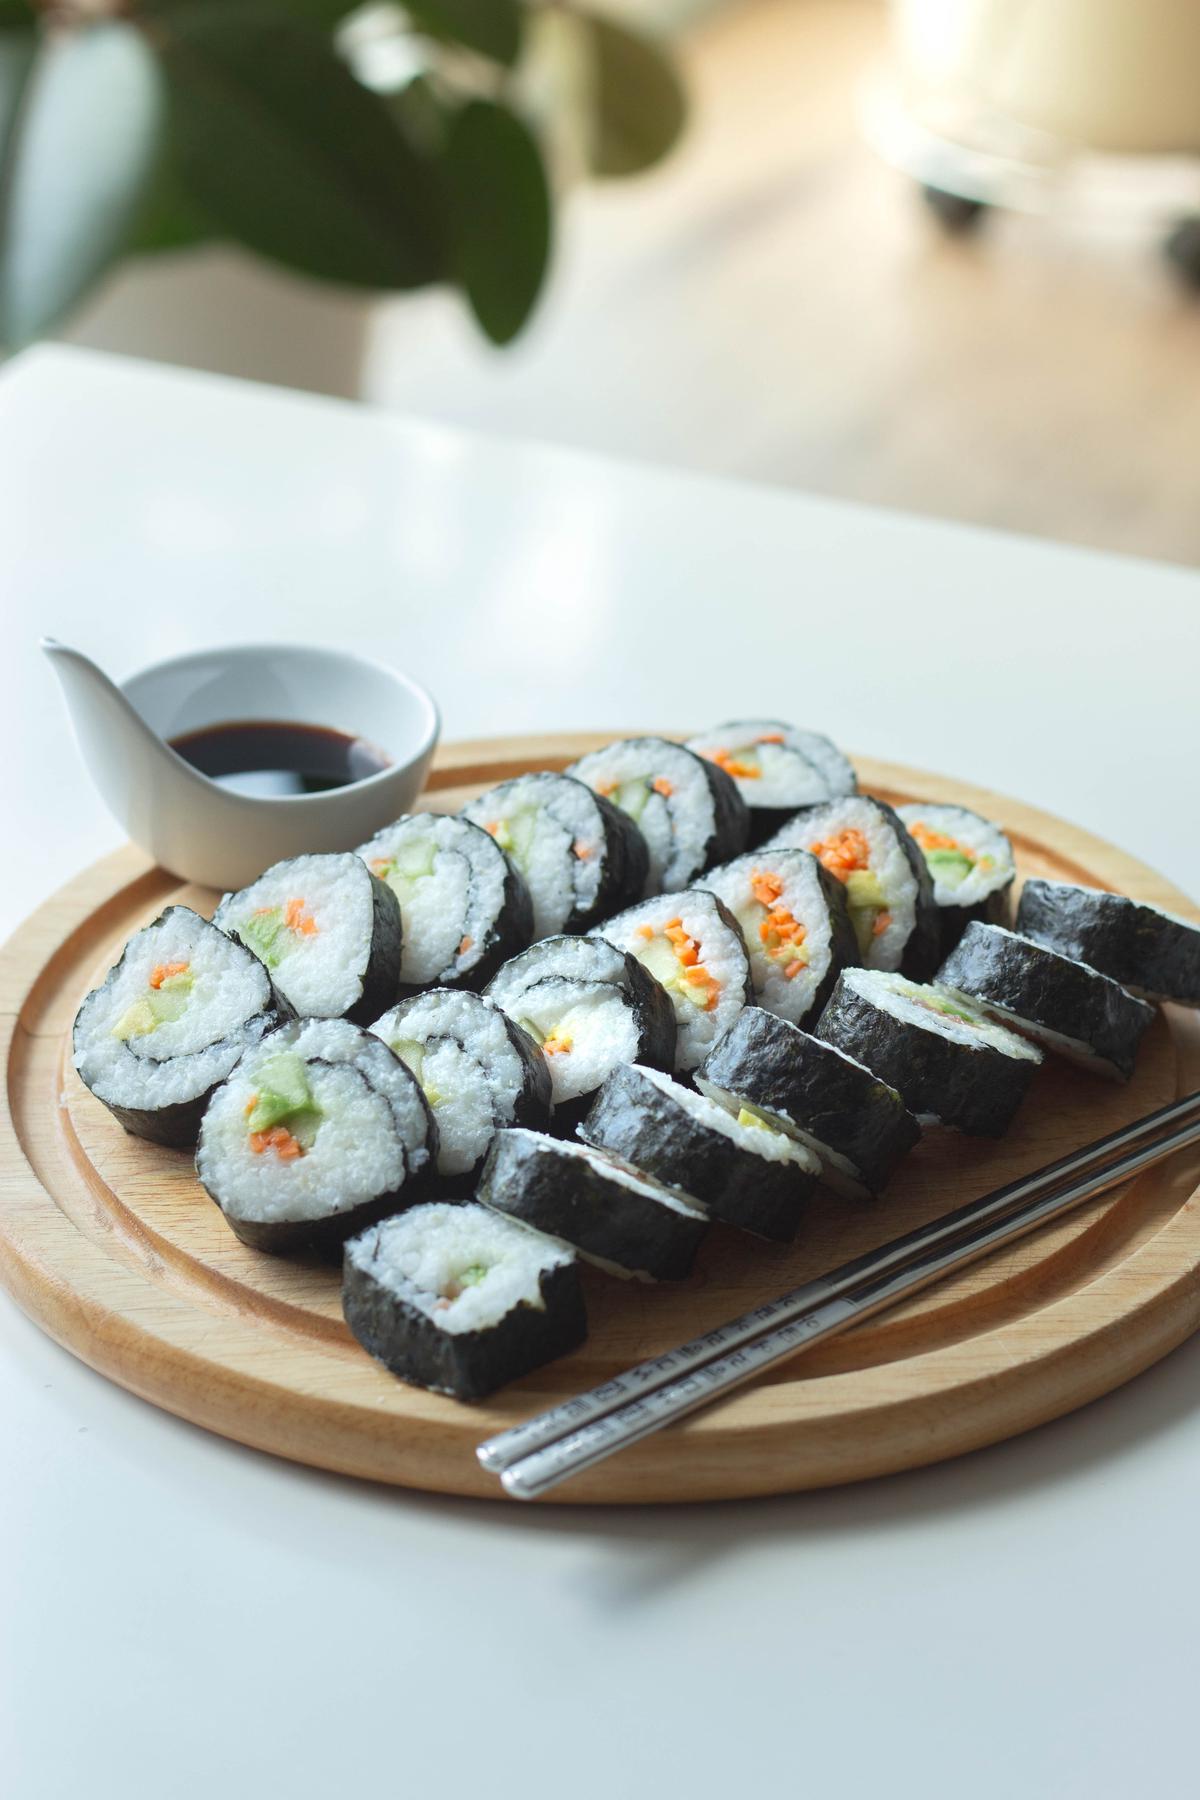 Un plato de rollos de sushi que representan los diversos sabores y variaciones de sushi que se han desarrollado debido a la globalización